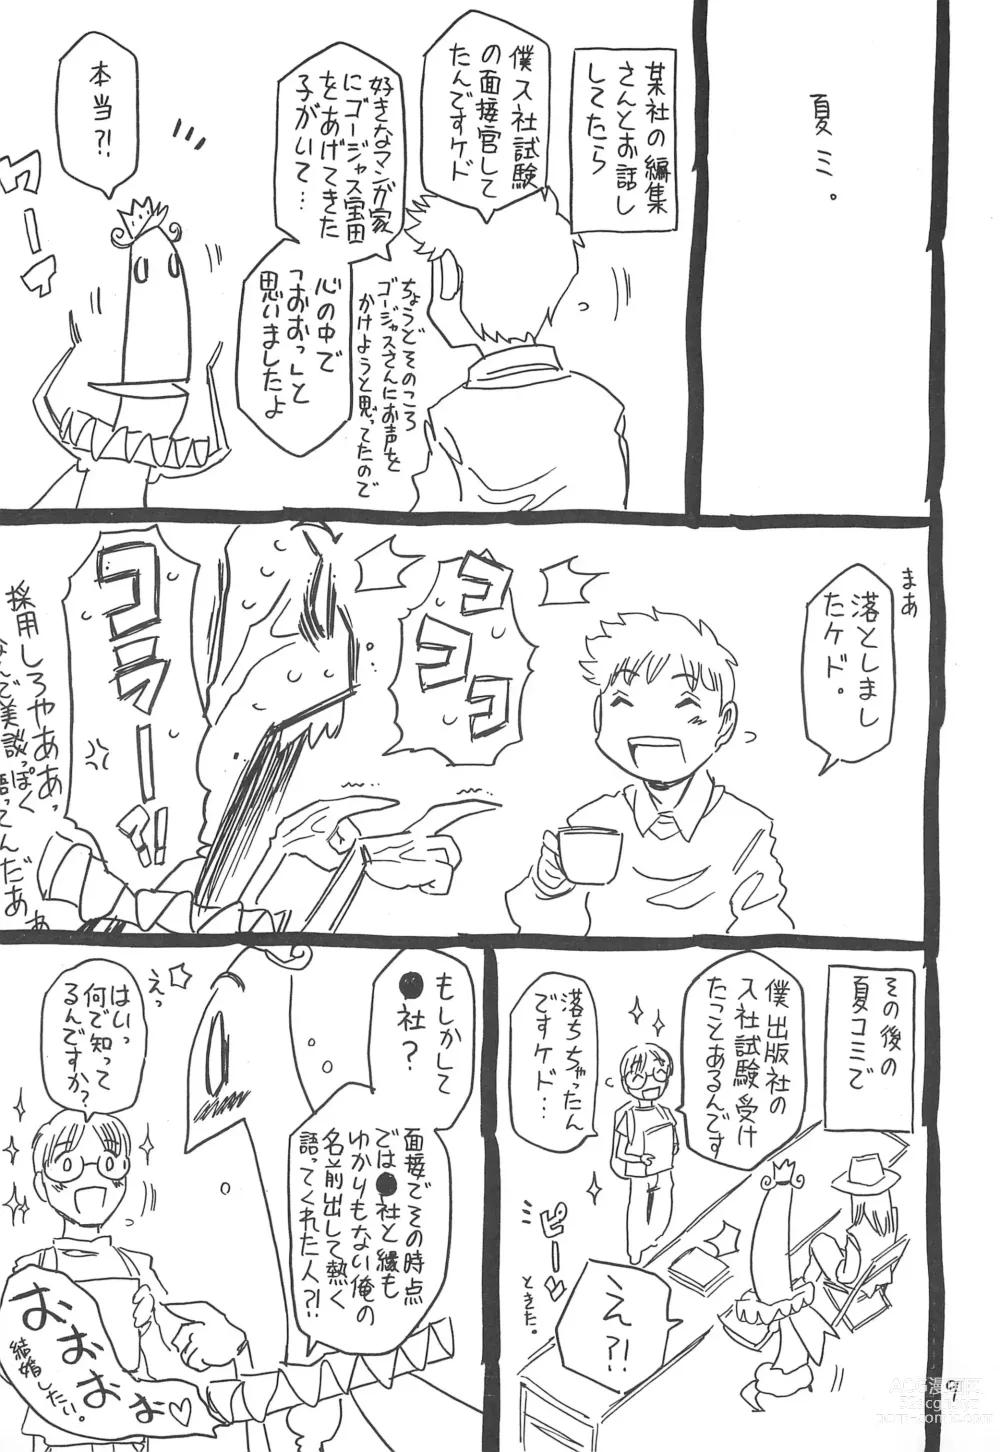 Page 9 of doujinshi Hyakka Shokkou Atopink